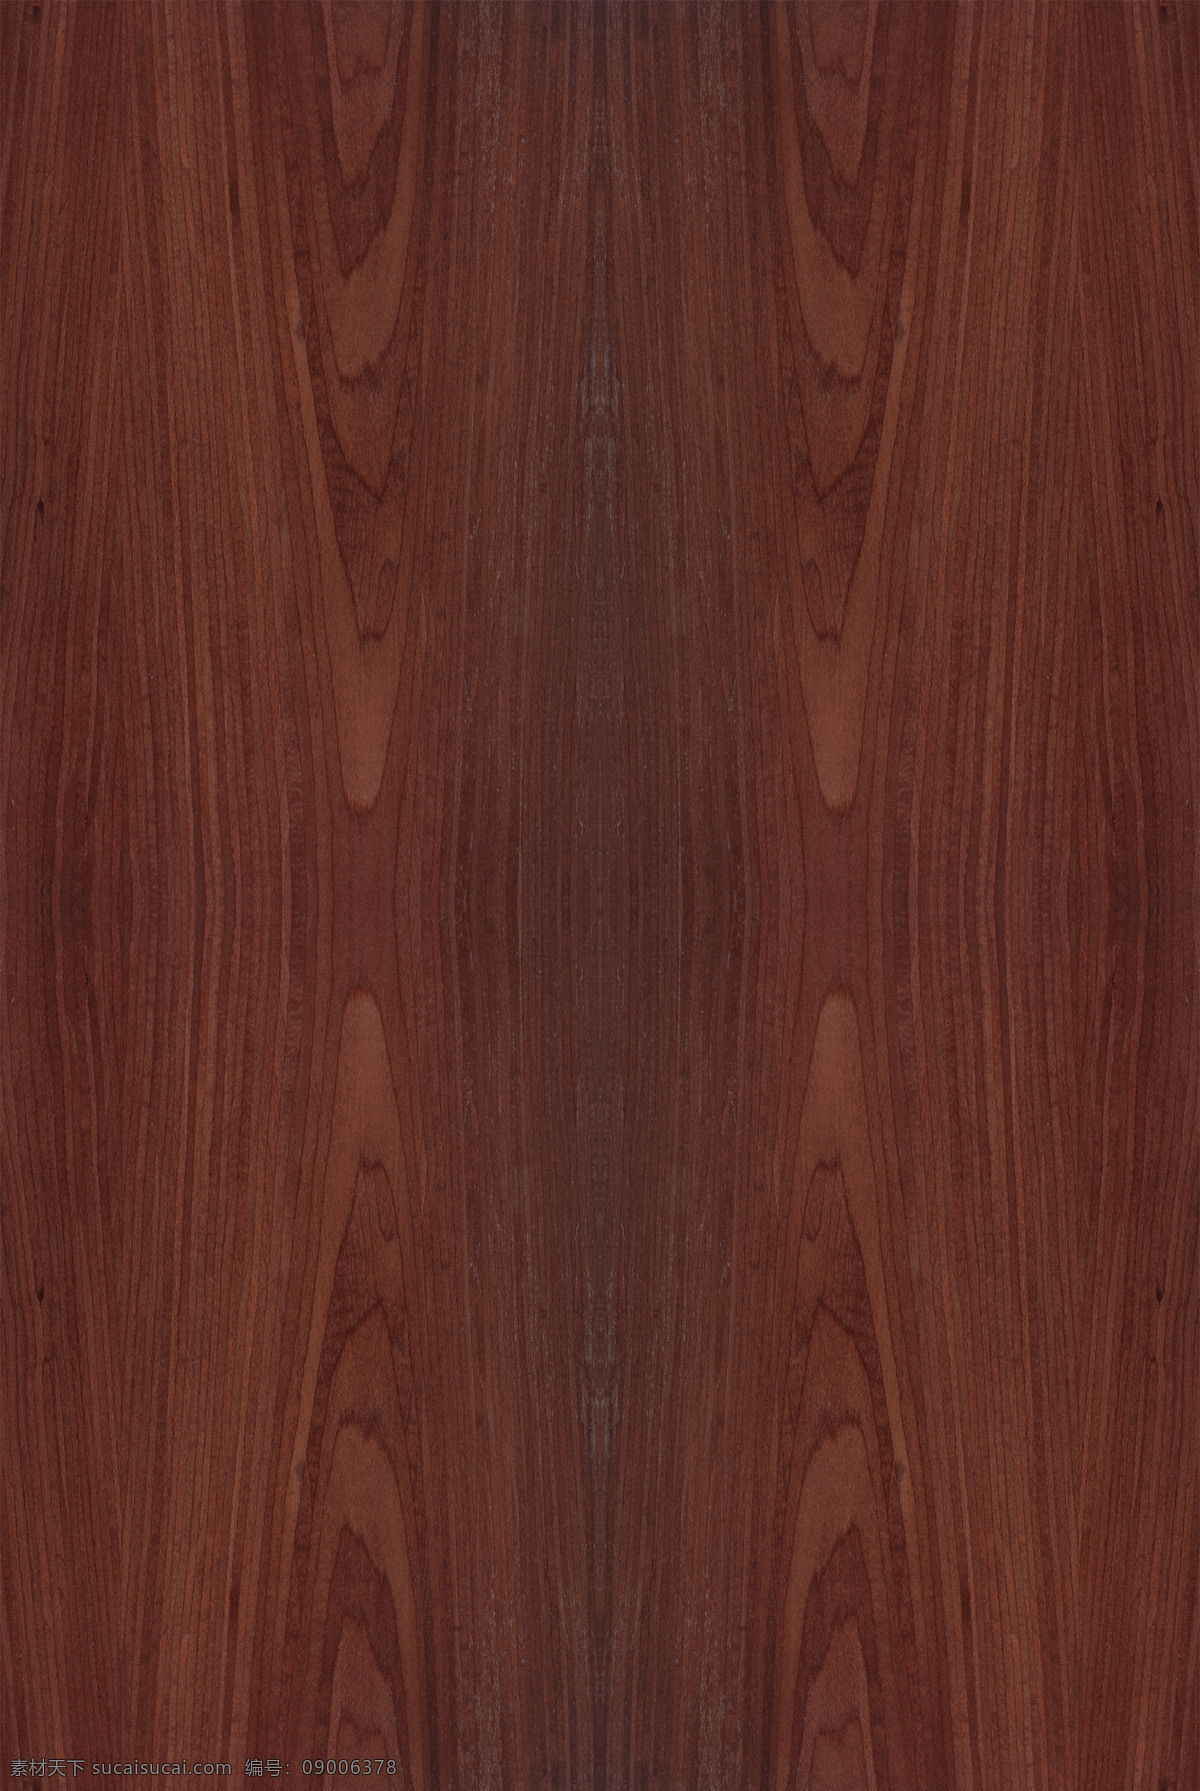 大红樱桃 木皮贴图 木纹 高清贴图 3d贴图 无缝拼图 uv板 木饰面板 3d设计 其他模型